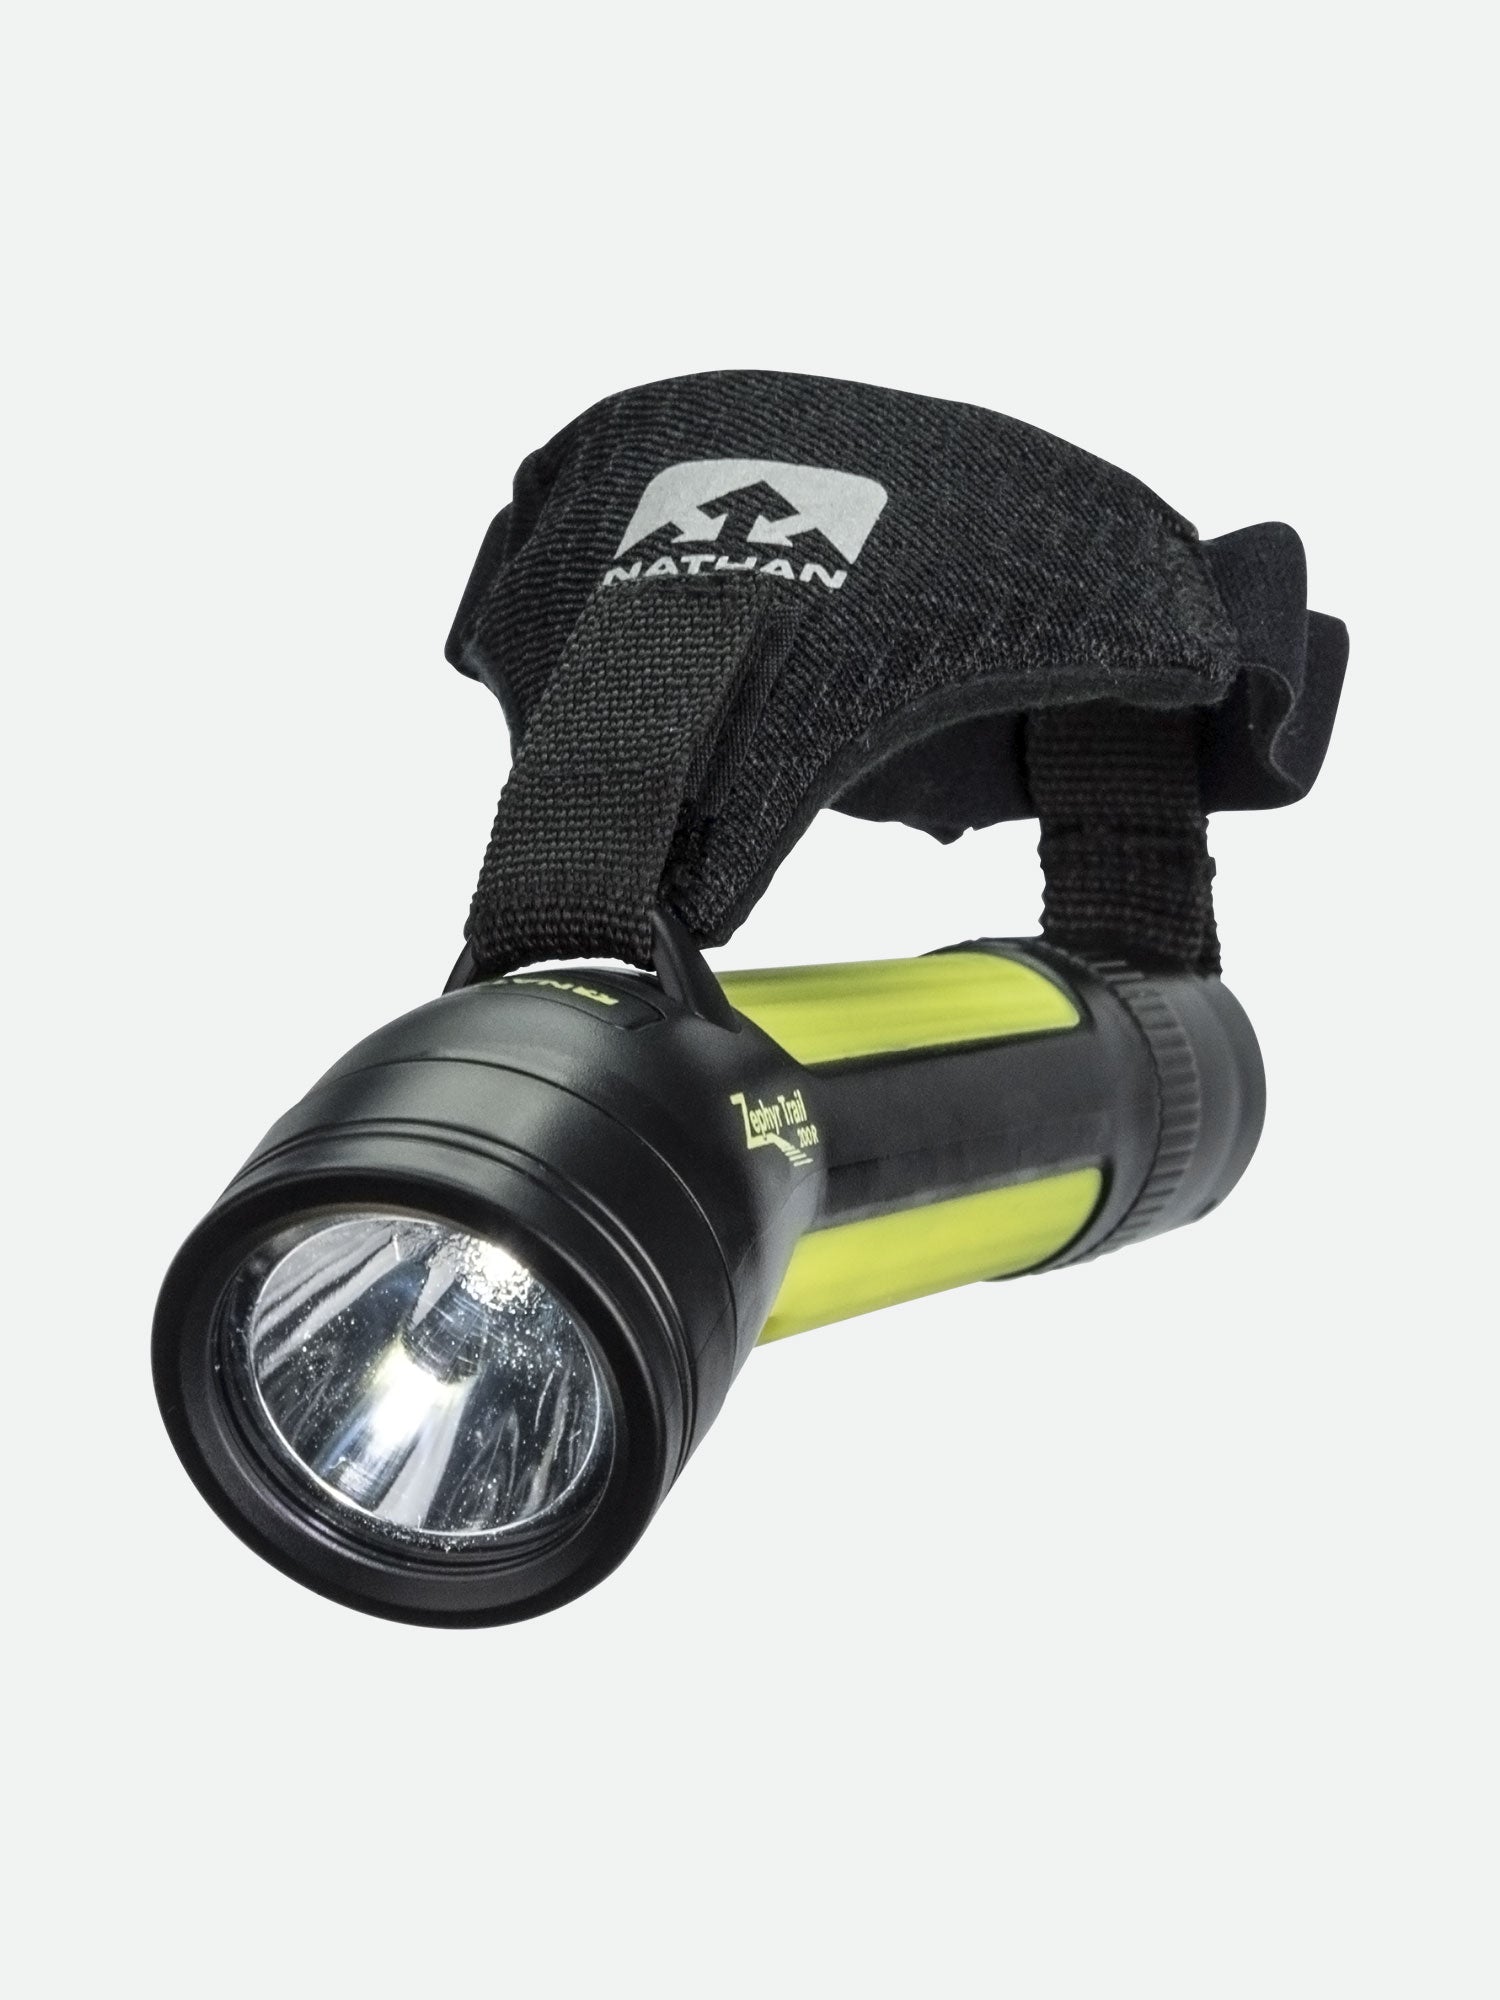 Hero flashlight LED warning vest motorcycle light vest safety vest